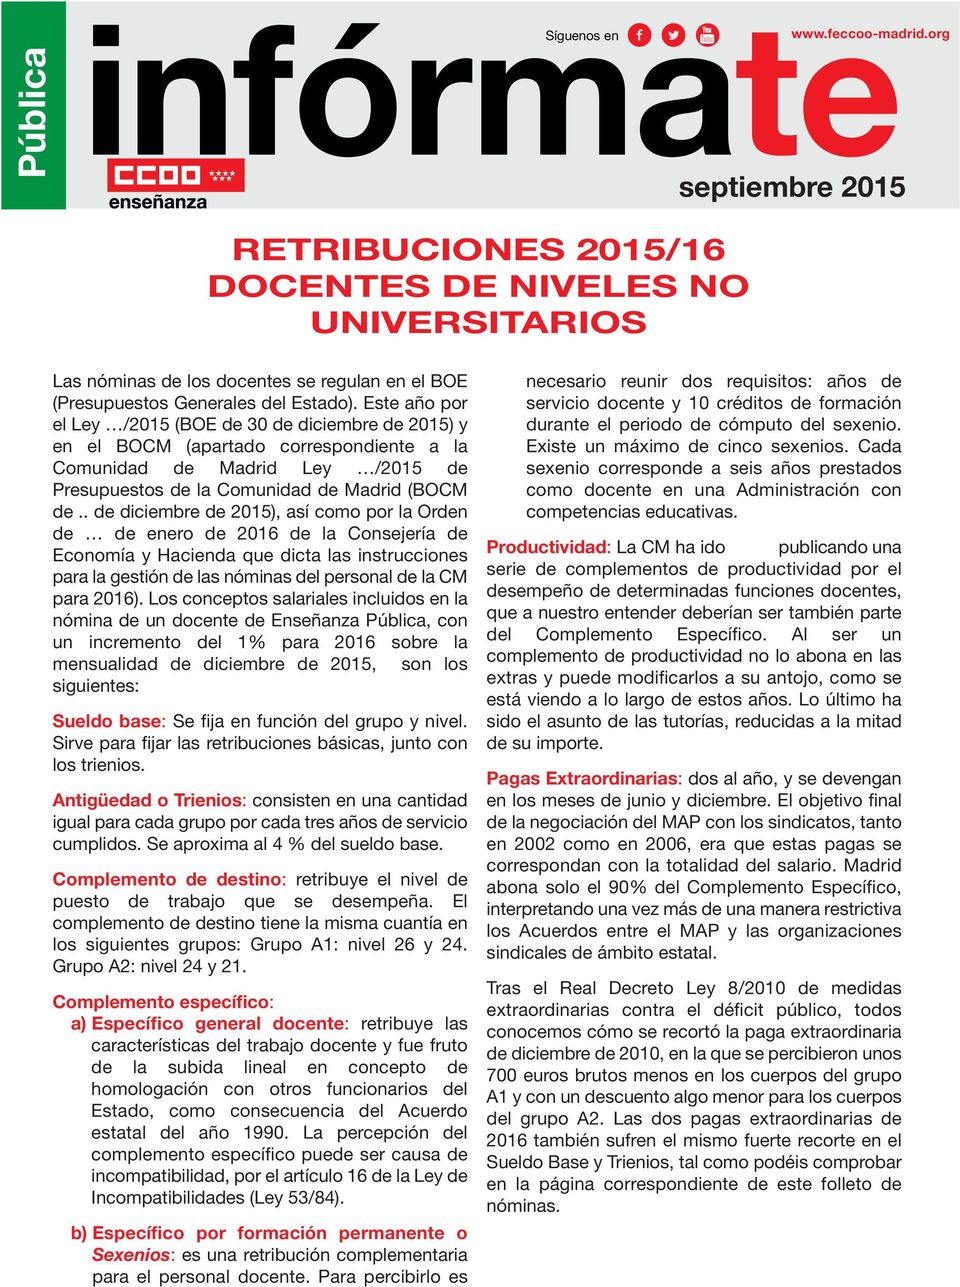 Este año por el Ley /2015 (BOE de 30 de diciembre de 2015) y en el BOCM (apartado correspondiente a la Comunidad de Madrid Ley /2015 de Presupuestos de la Comunidad de Madrid (BOCM de.